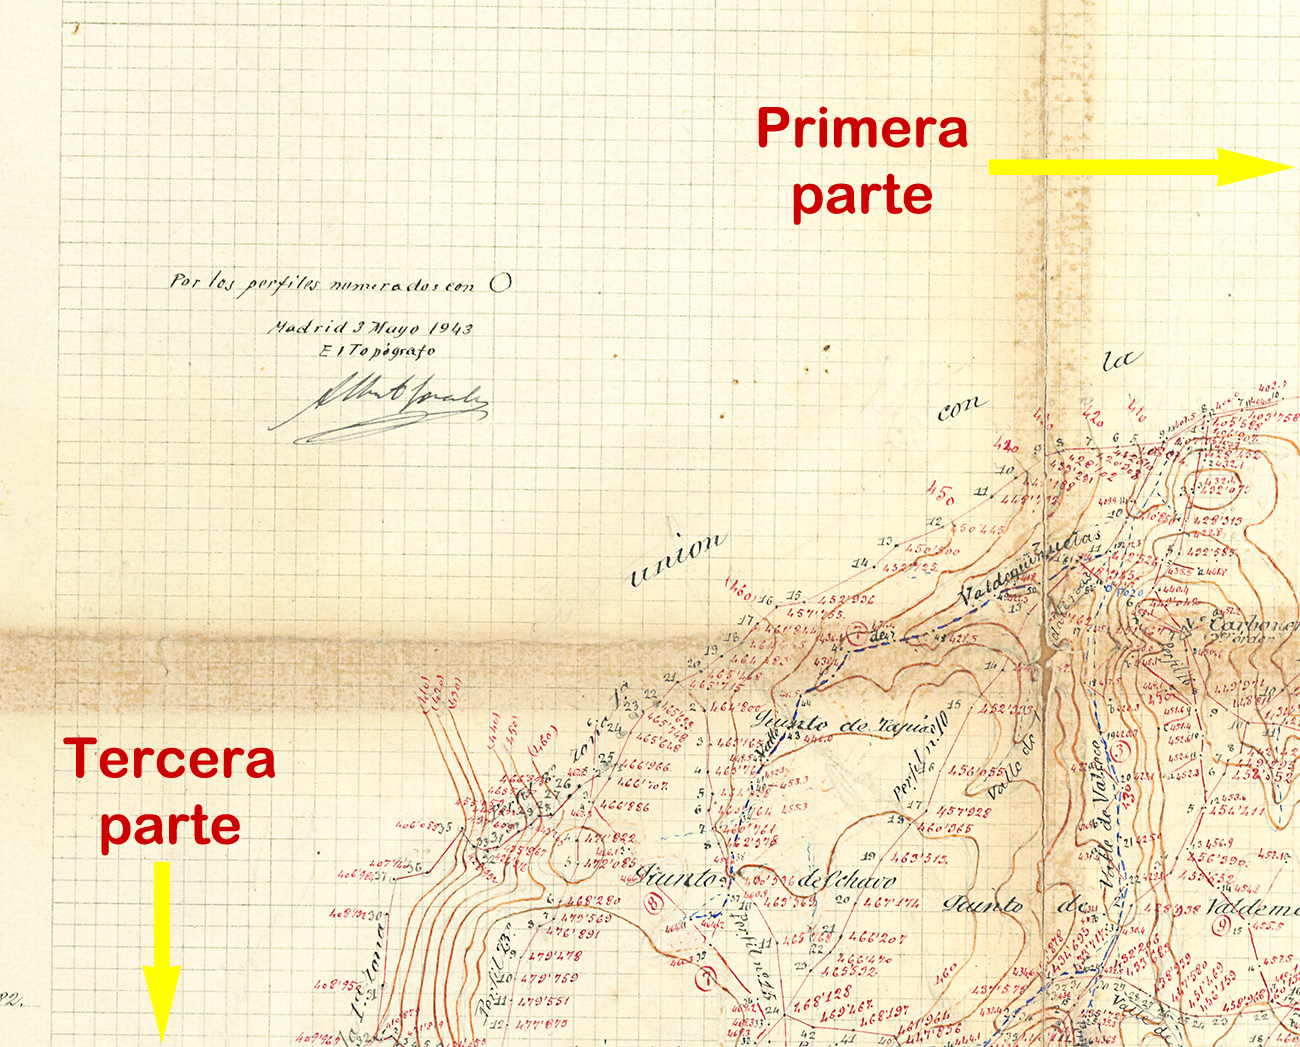 Mapa topográfico de curvas de nivel del término de Malpica realizado en noviembre de 1882, parte 2